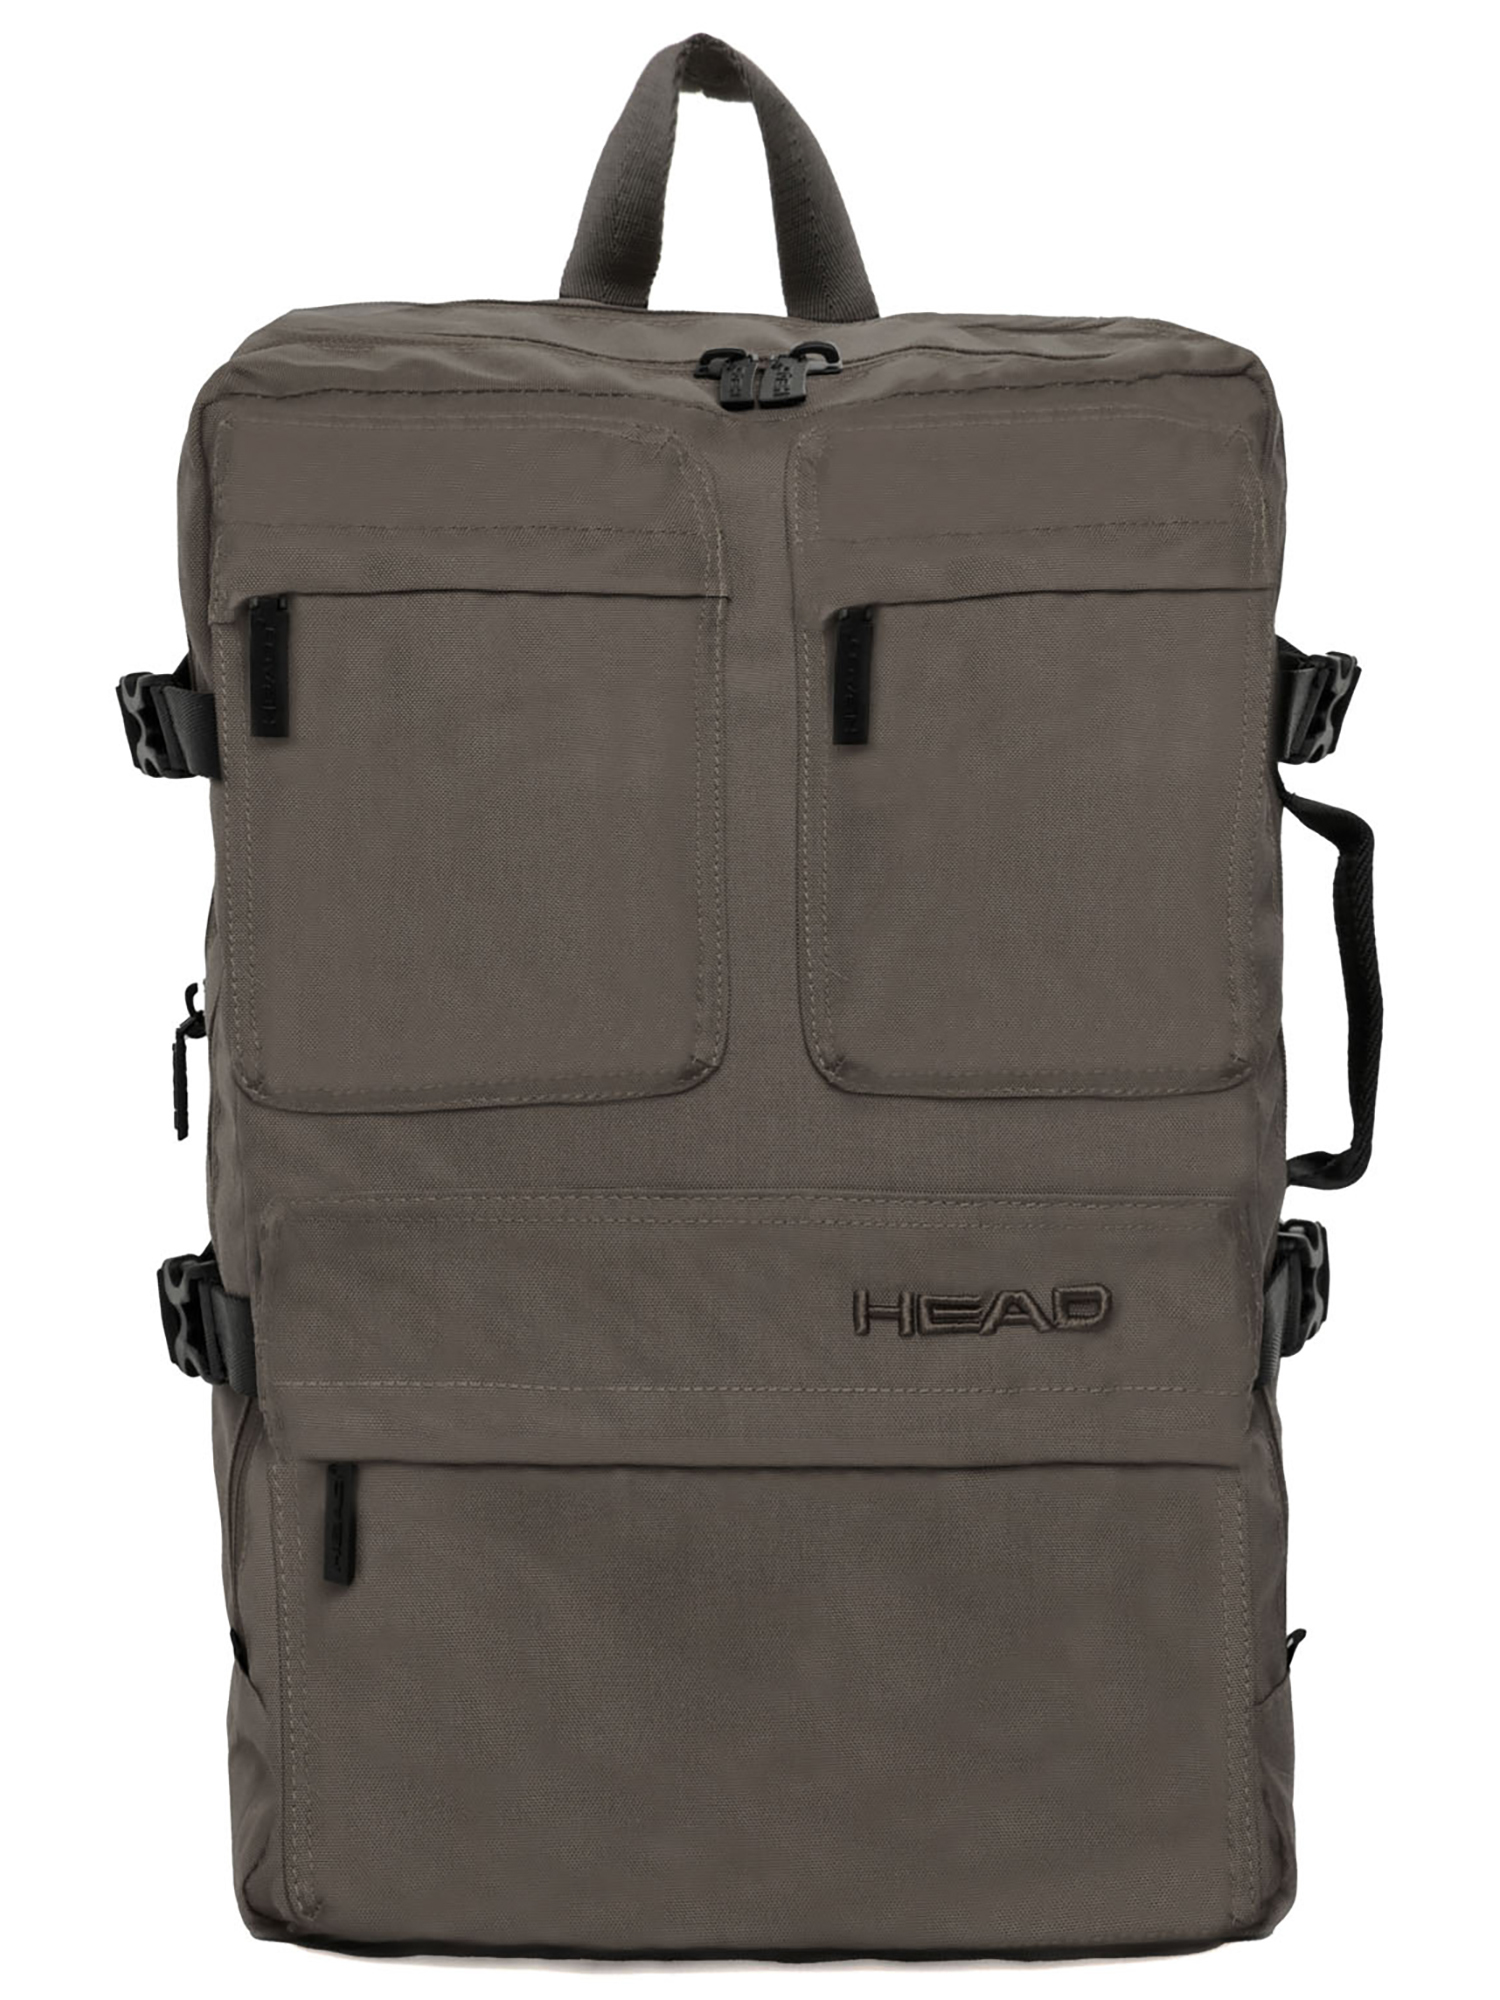 Рюкзак HEAD Day Squared Backpack, темно серый